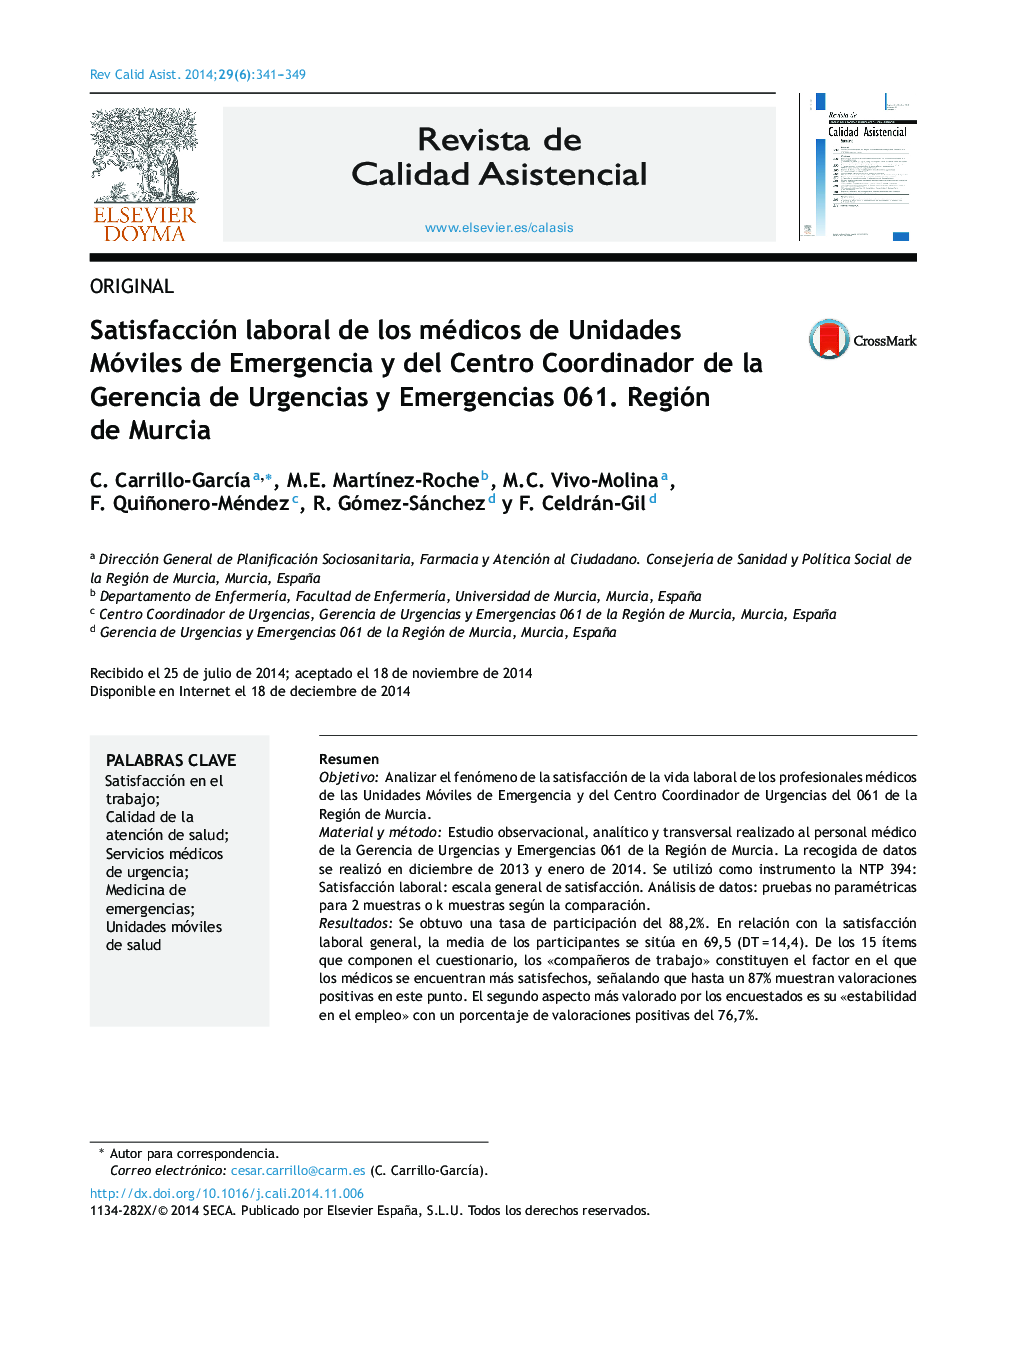 Satisfacción laboral de los médicos de Unidades Móviles de Emergencia y del Centro Coordinador de la Gerencia de Urgencias y Emergencias 061. Región de Murcia